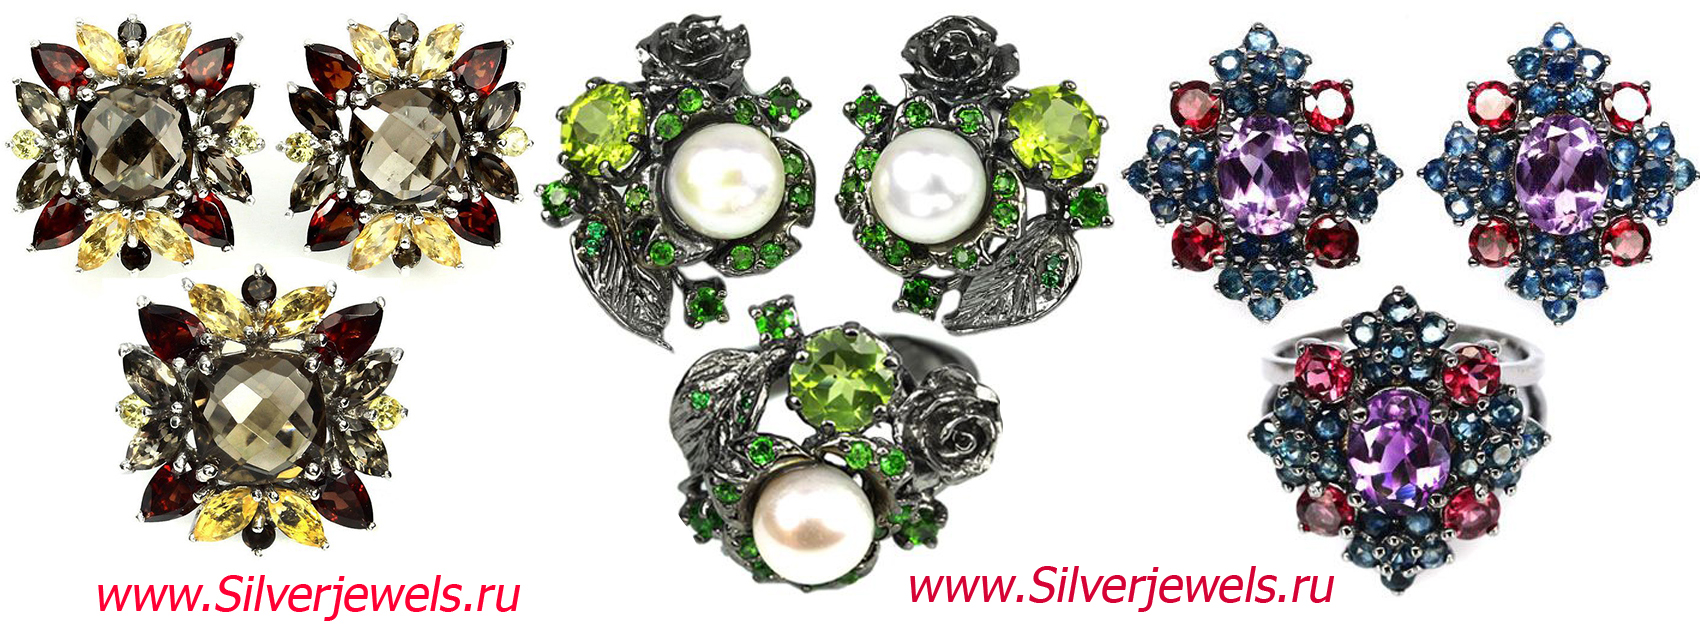 серебряные украшения silverjewels.ru гарнитуры с натуральными камнями